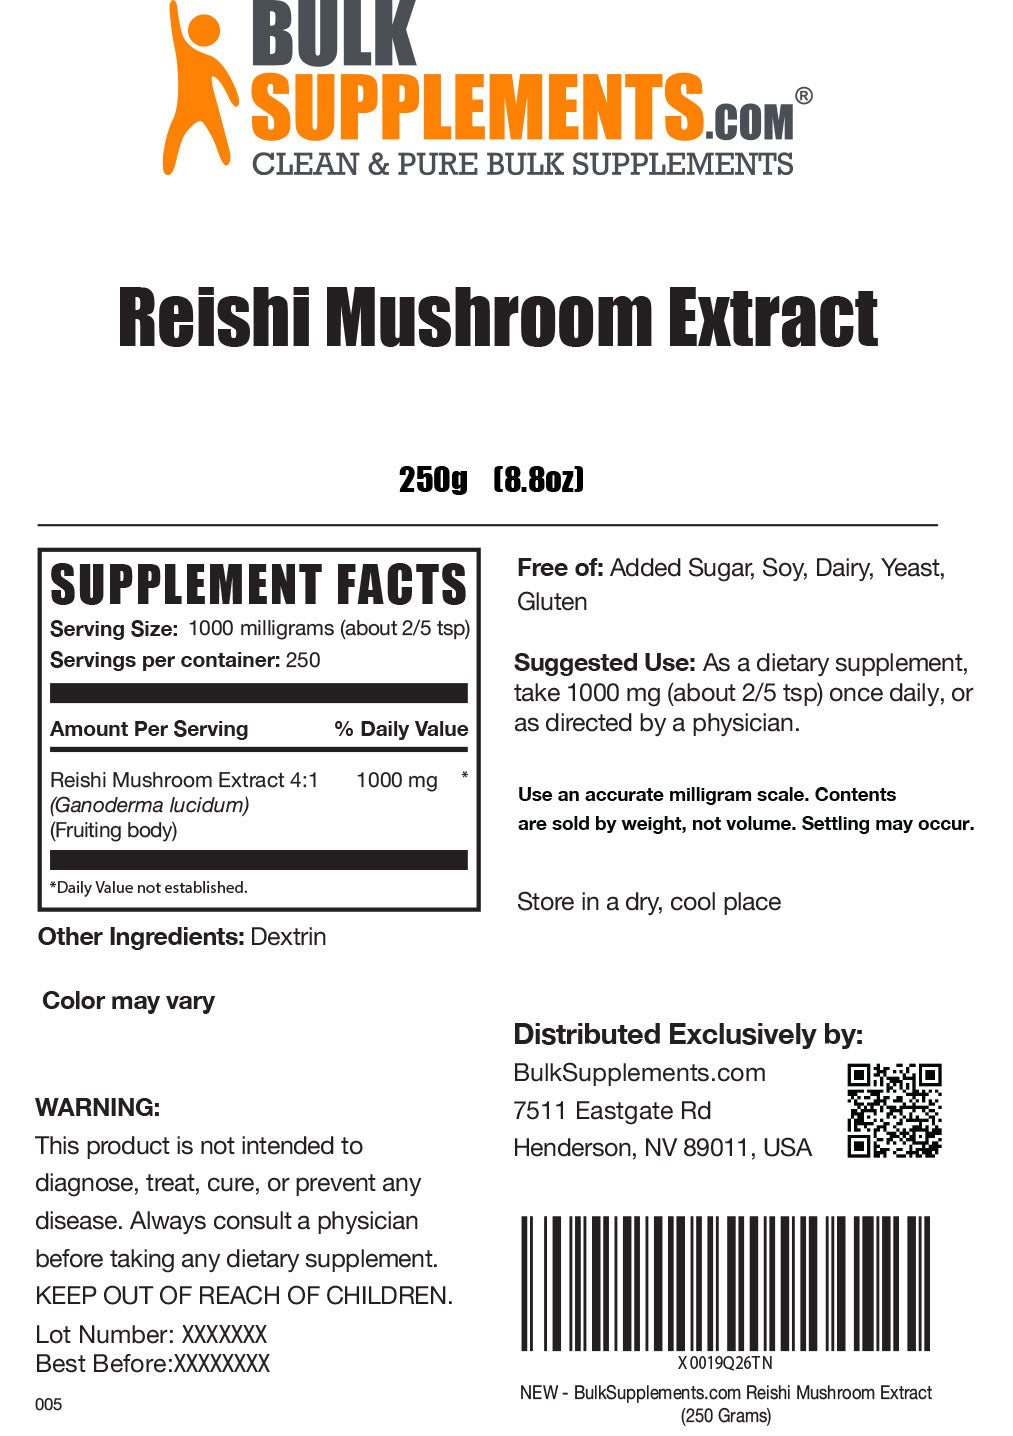 Reishi Mushroom Extract Powder 250g Label